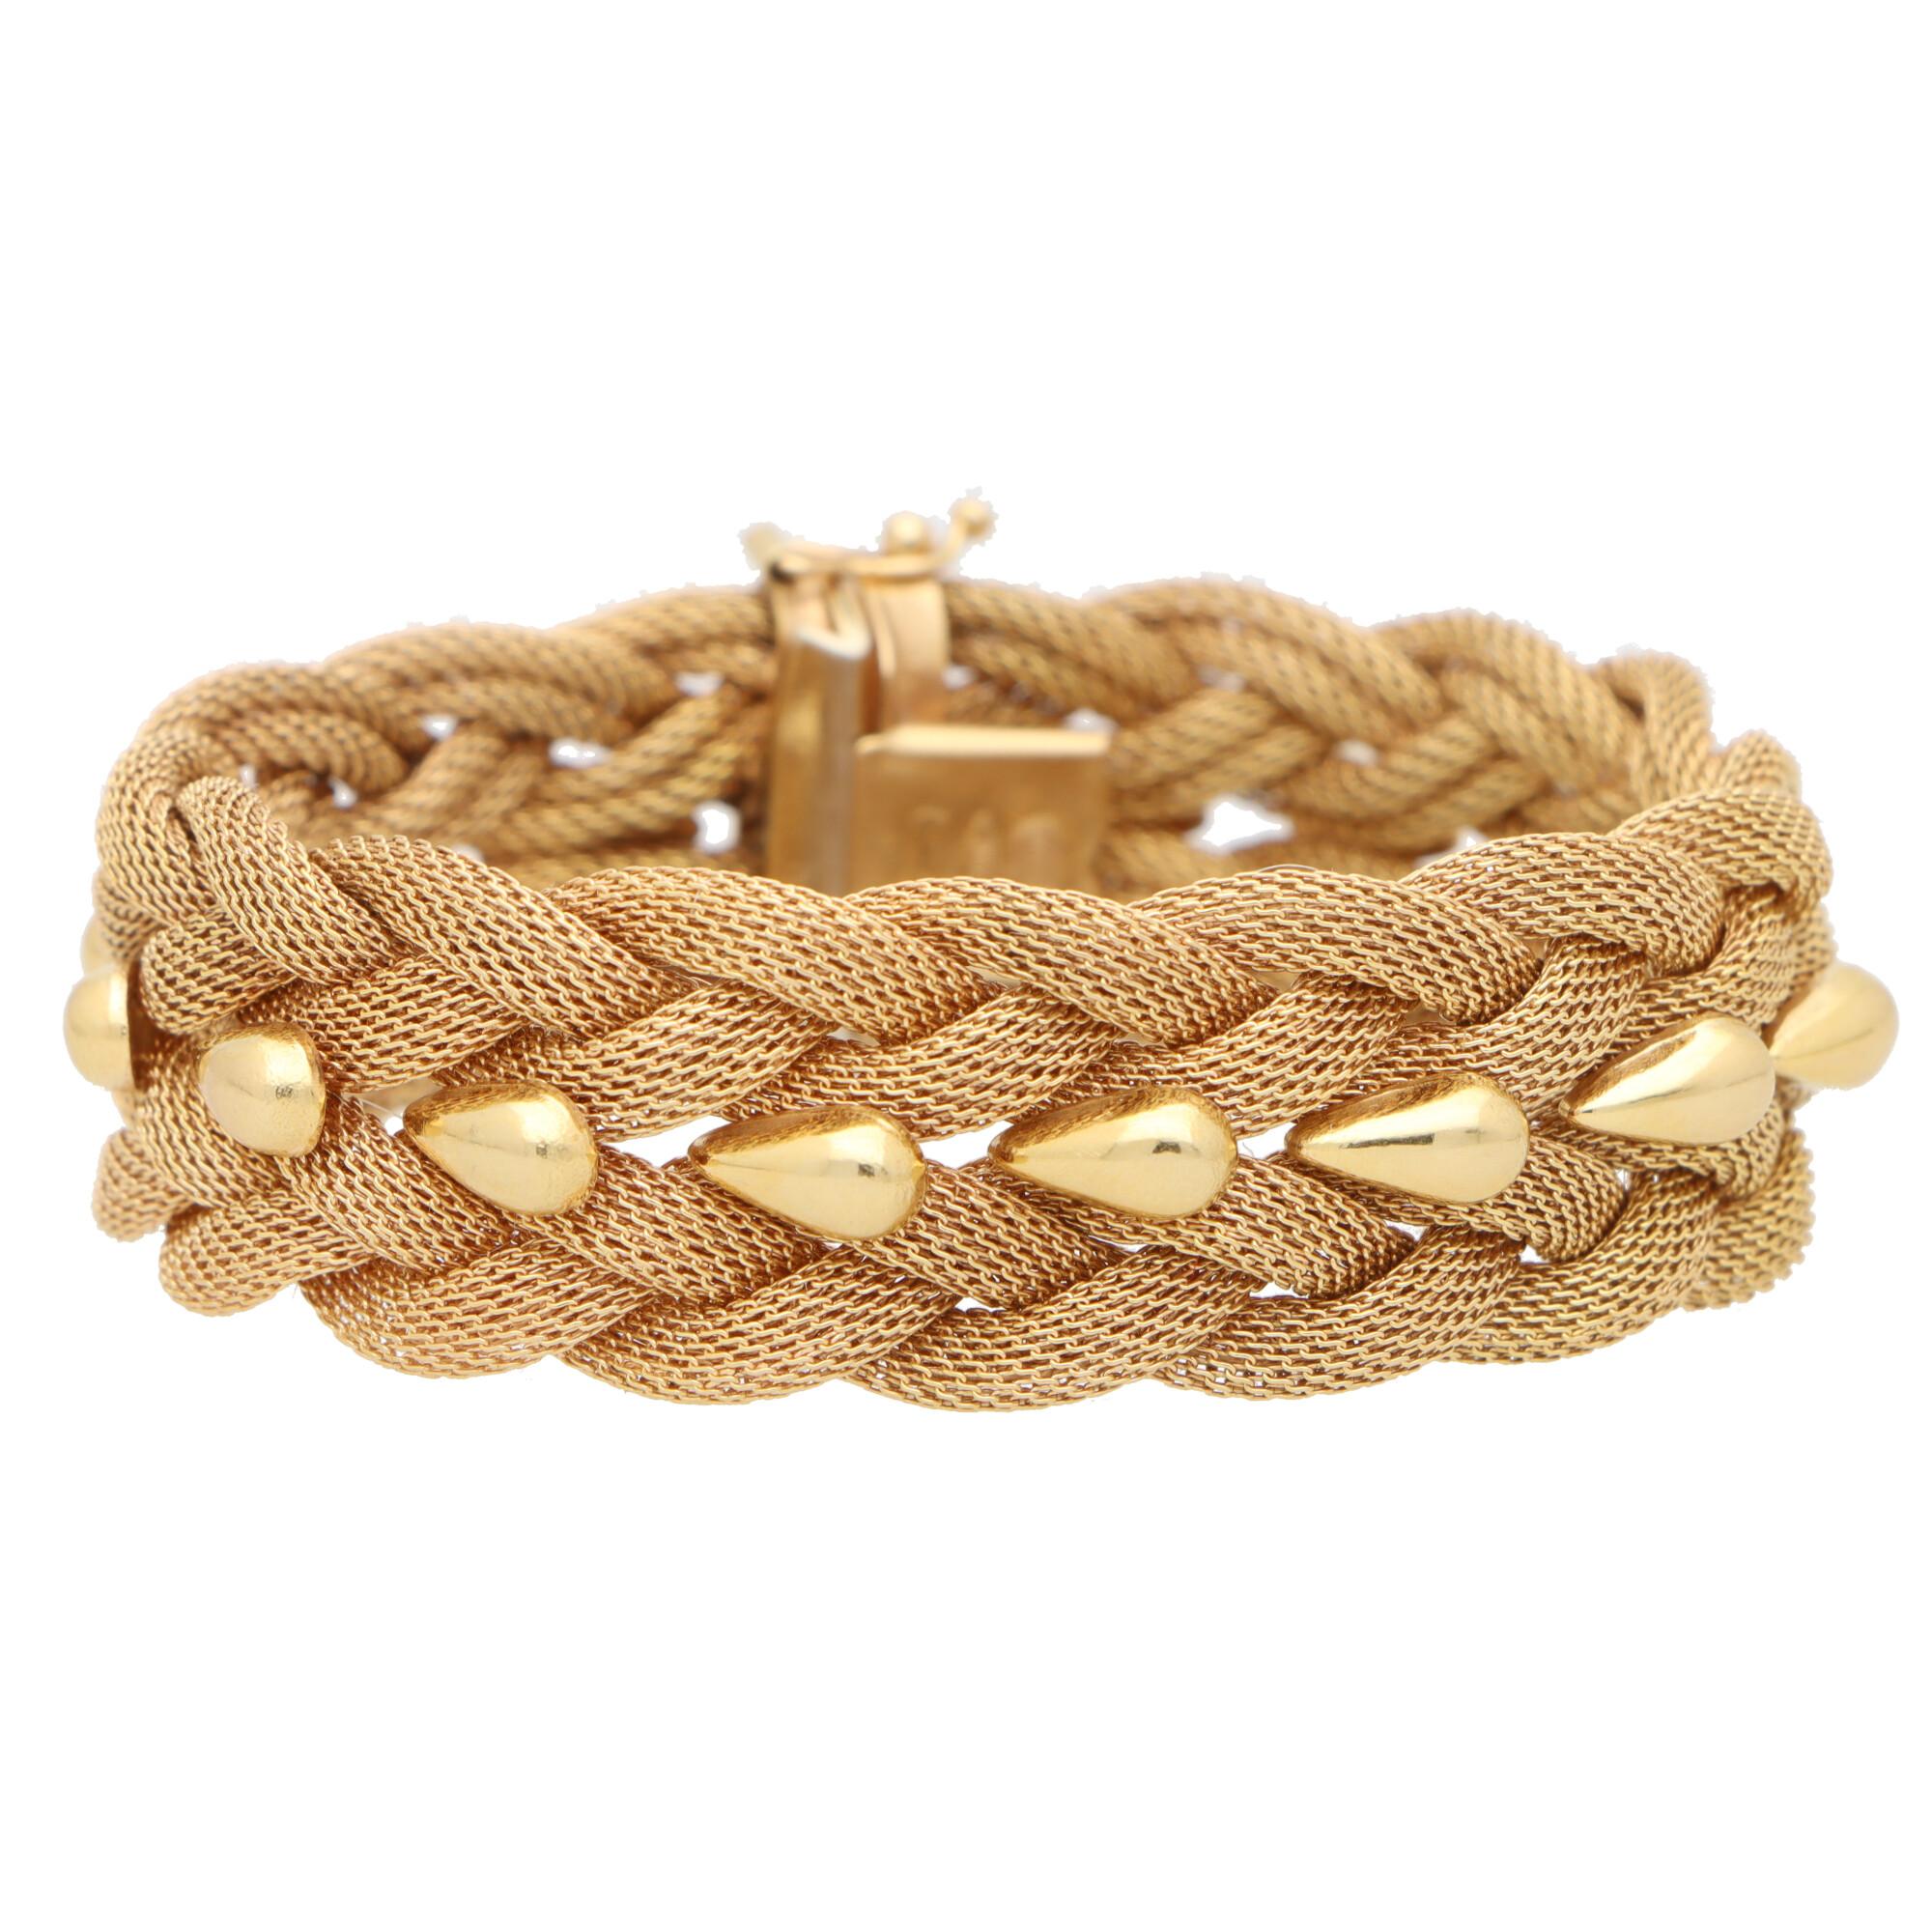 woven rope bracelets